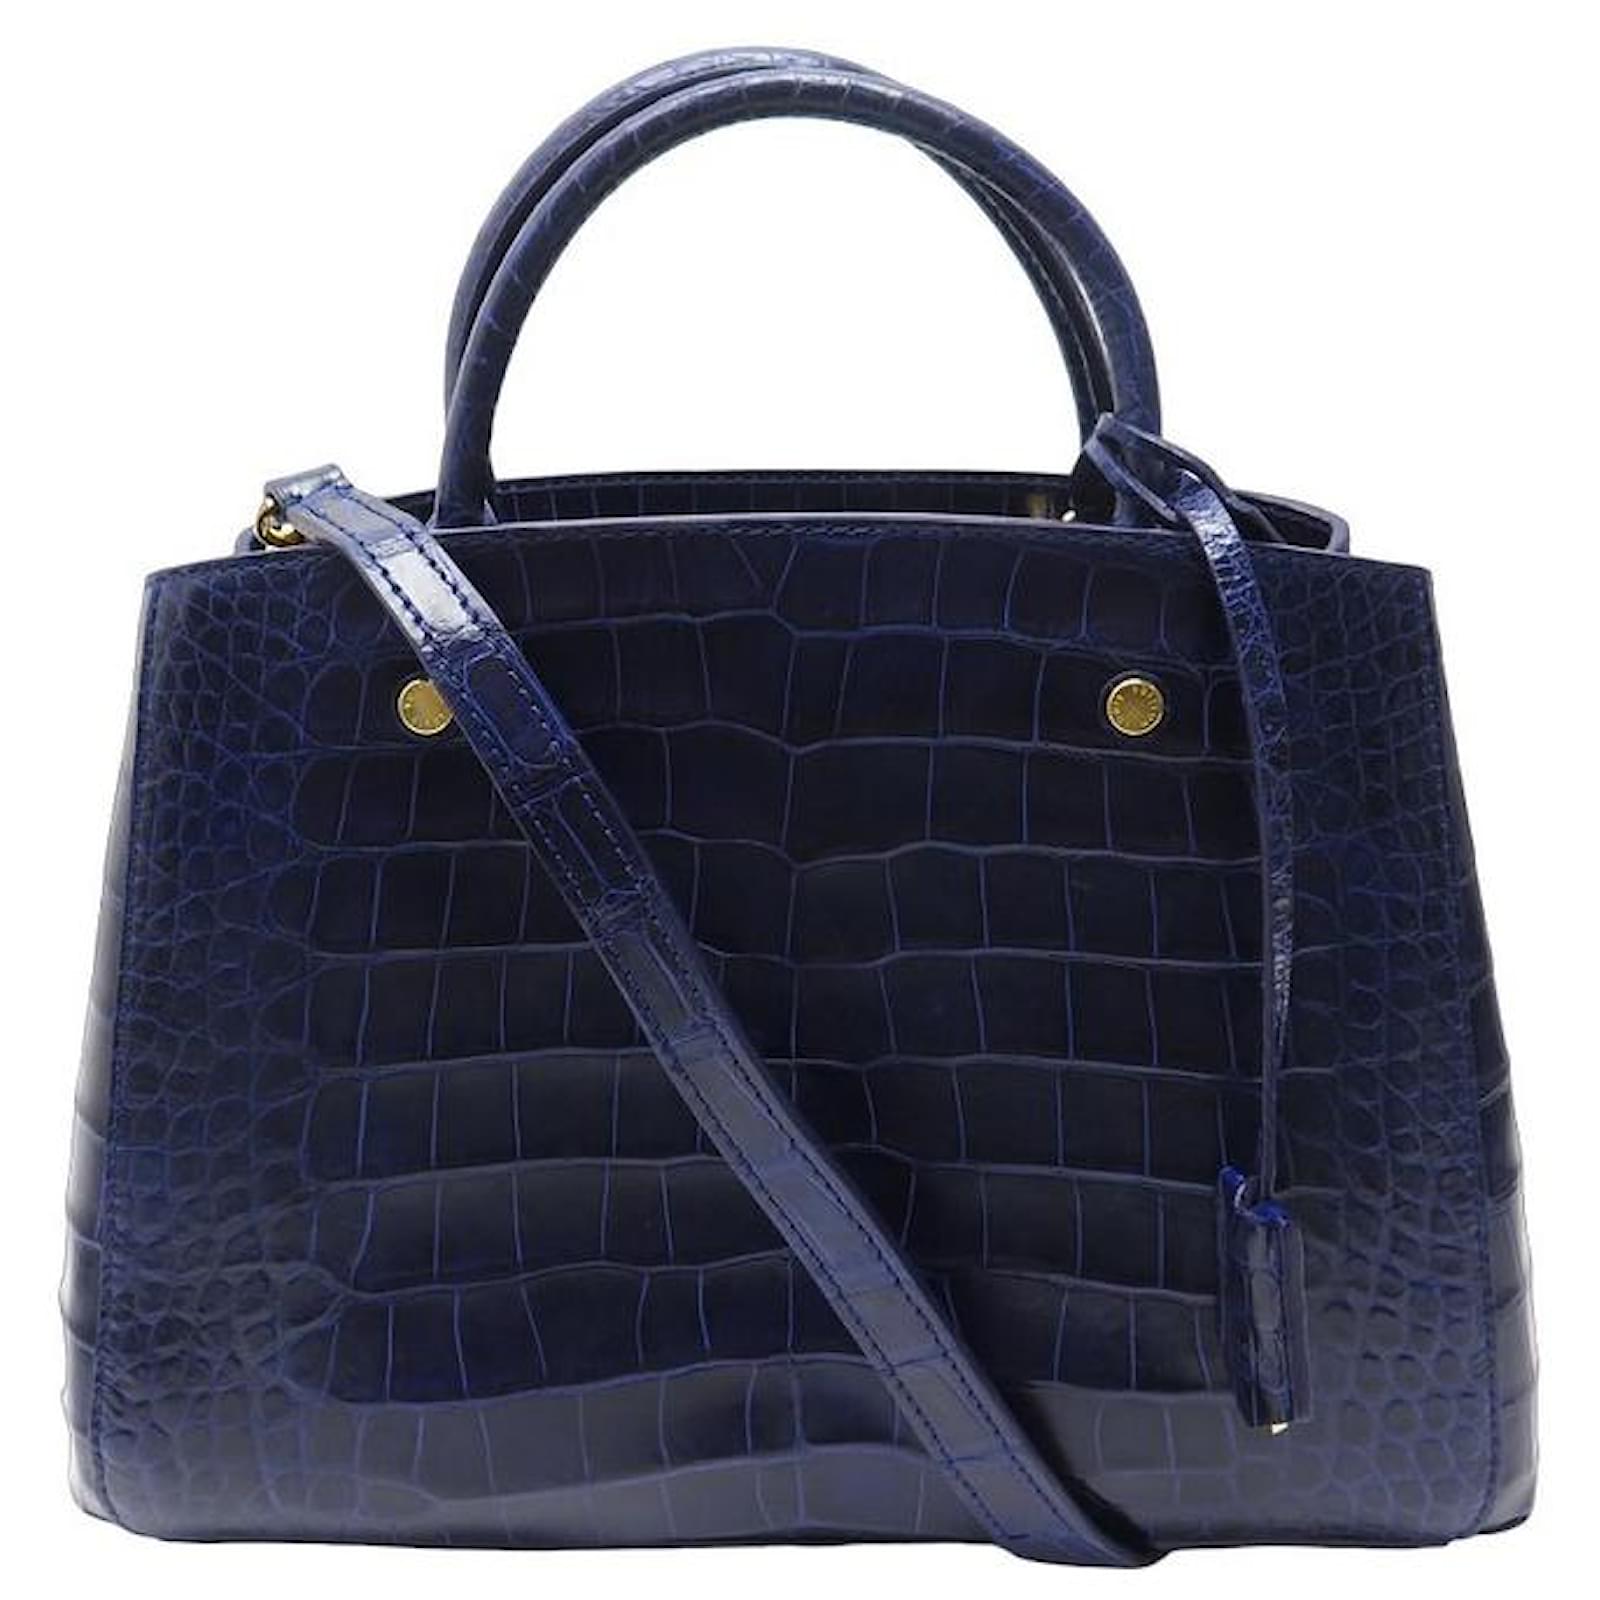 Handbags Louis Vuitton Louis Vuitton Montaigne mm Navy Blue Crocodile Leather Purse Hand Bag